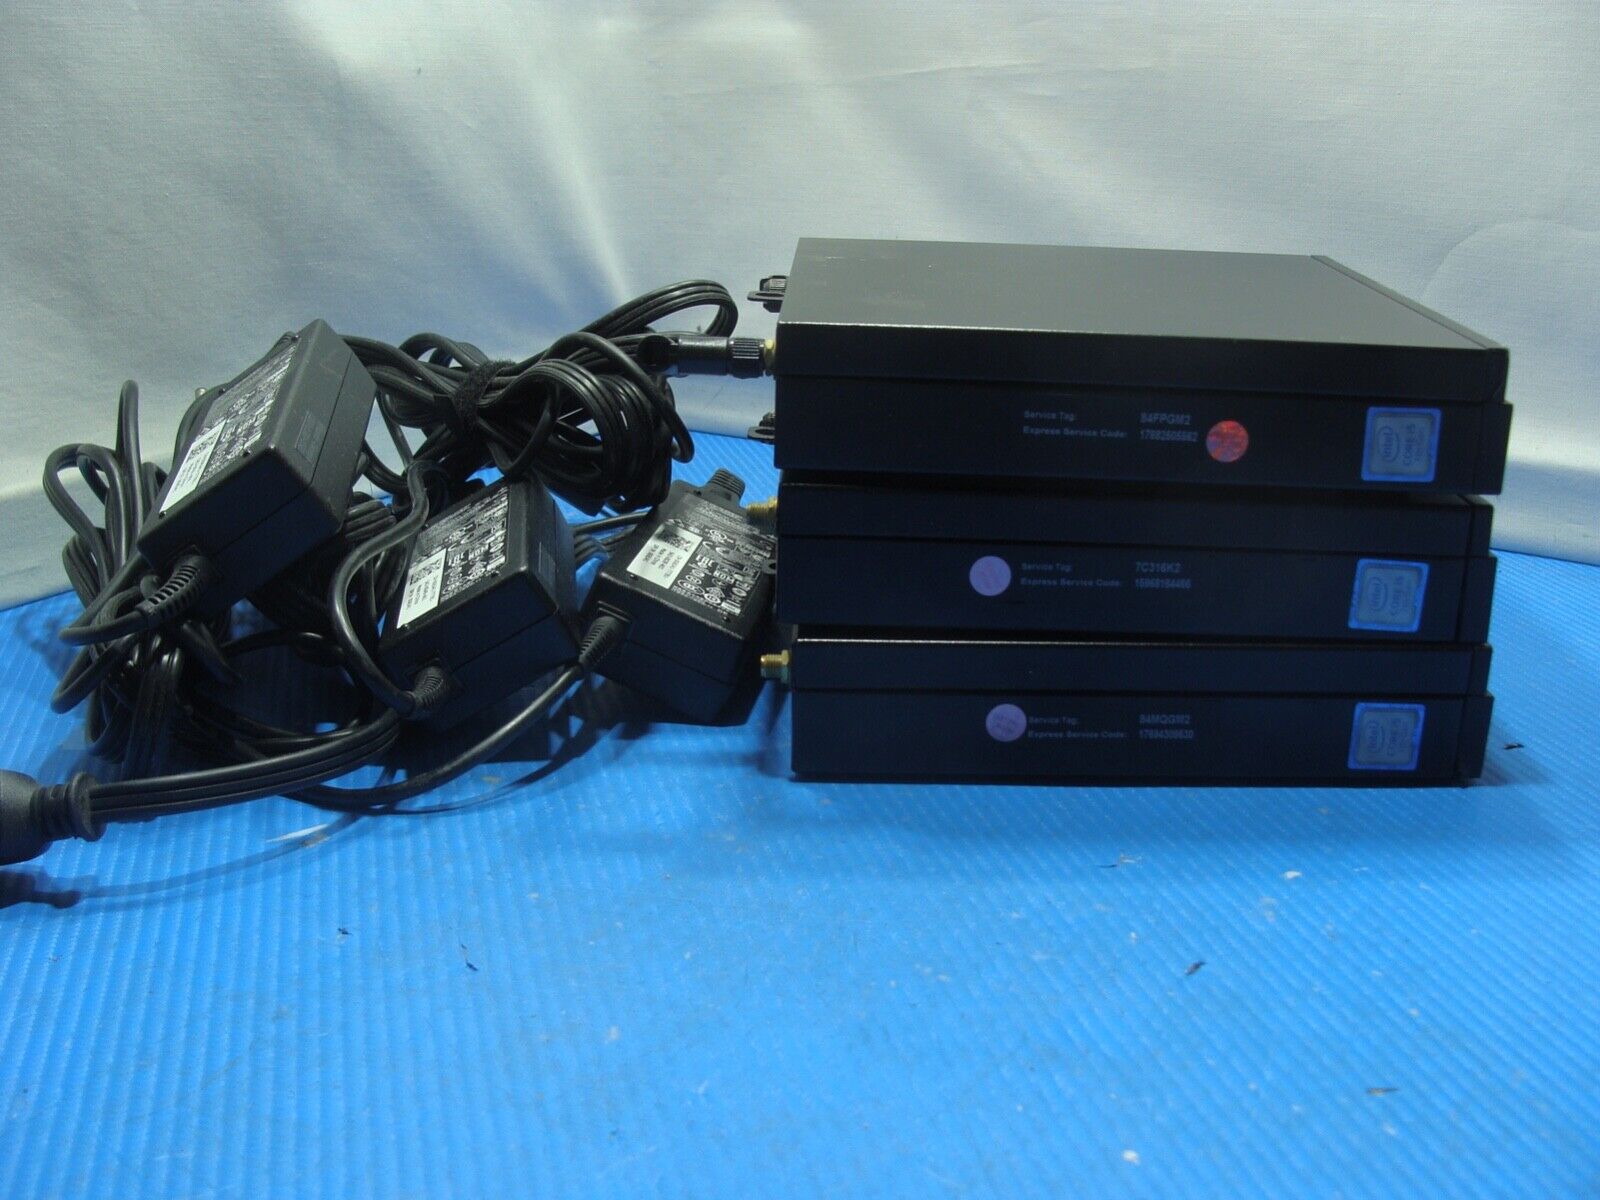 Lot of 3 Power Dell Optiplex 3050 MFF i5-7500T 2.7GHz 8GB 256GB Win10P Wifi + BT